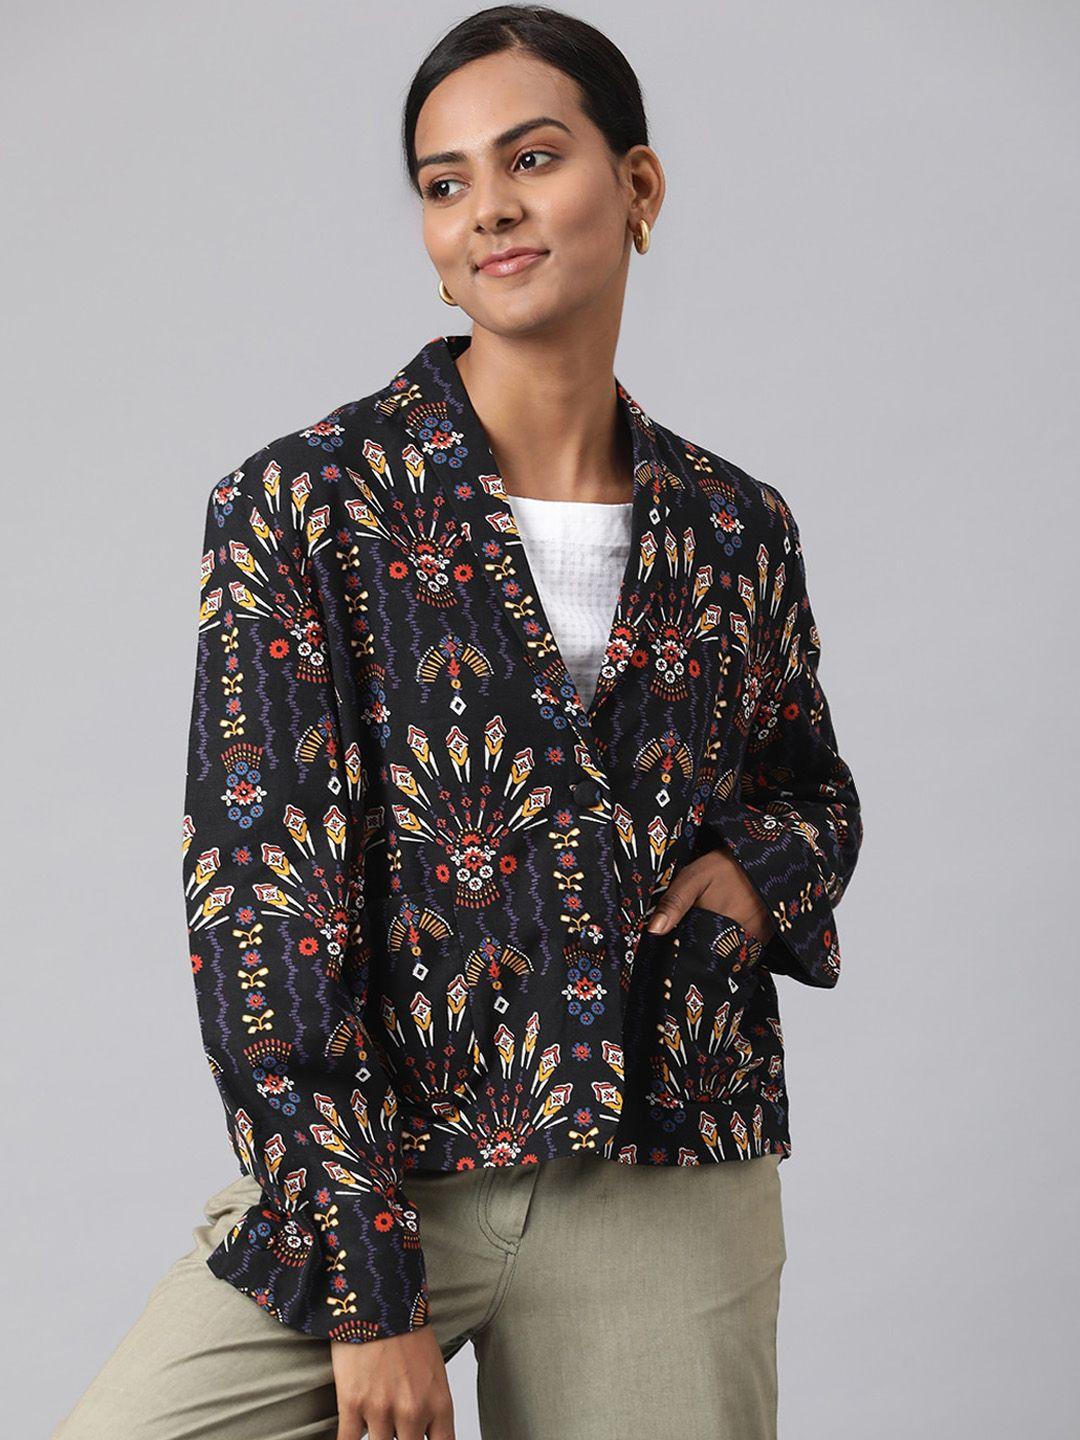 fabindia-women-black-&-brown-printed-tailored-jacket